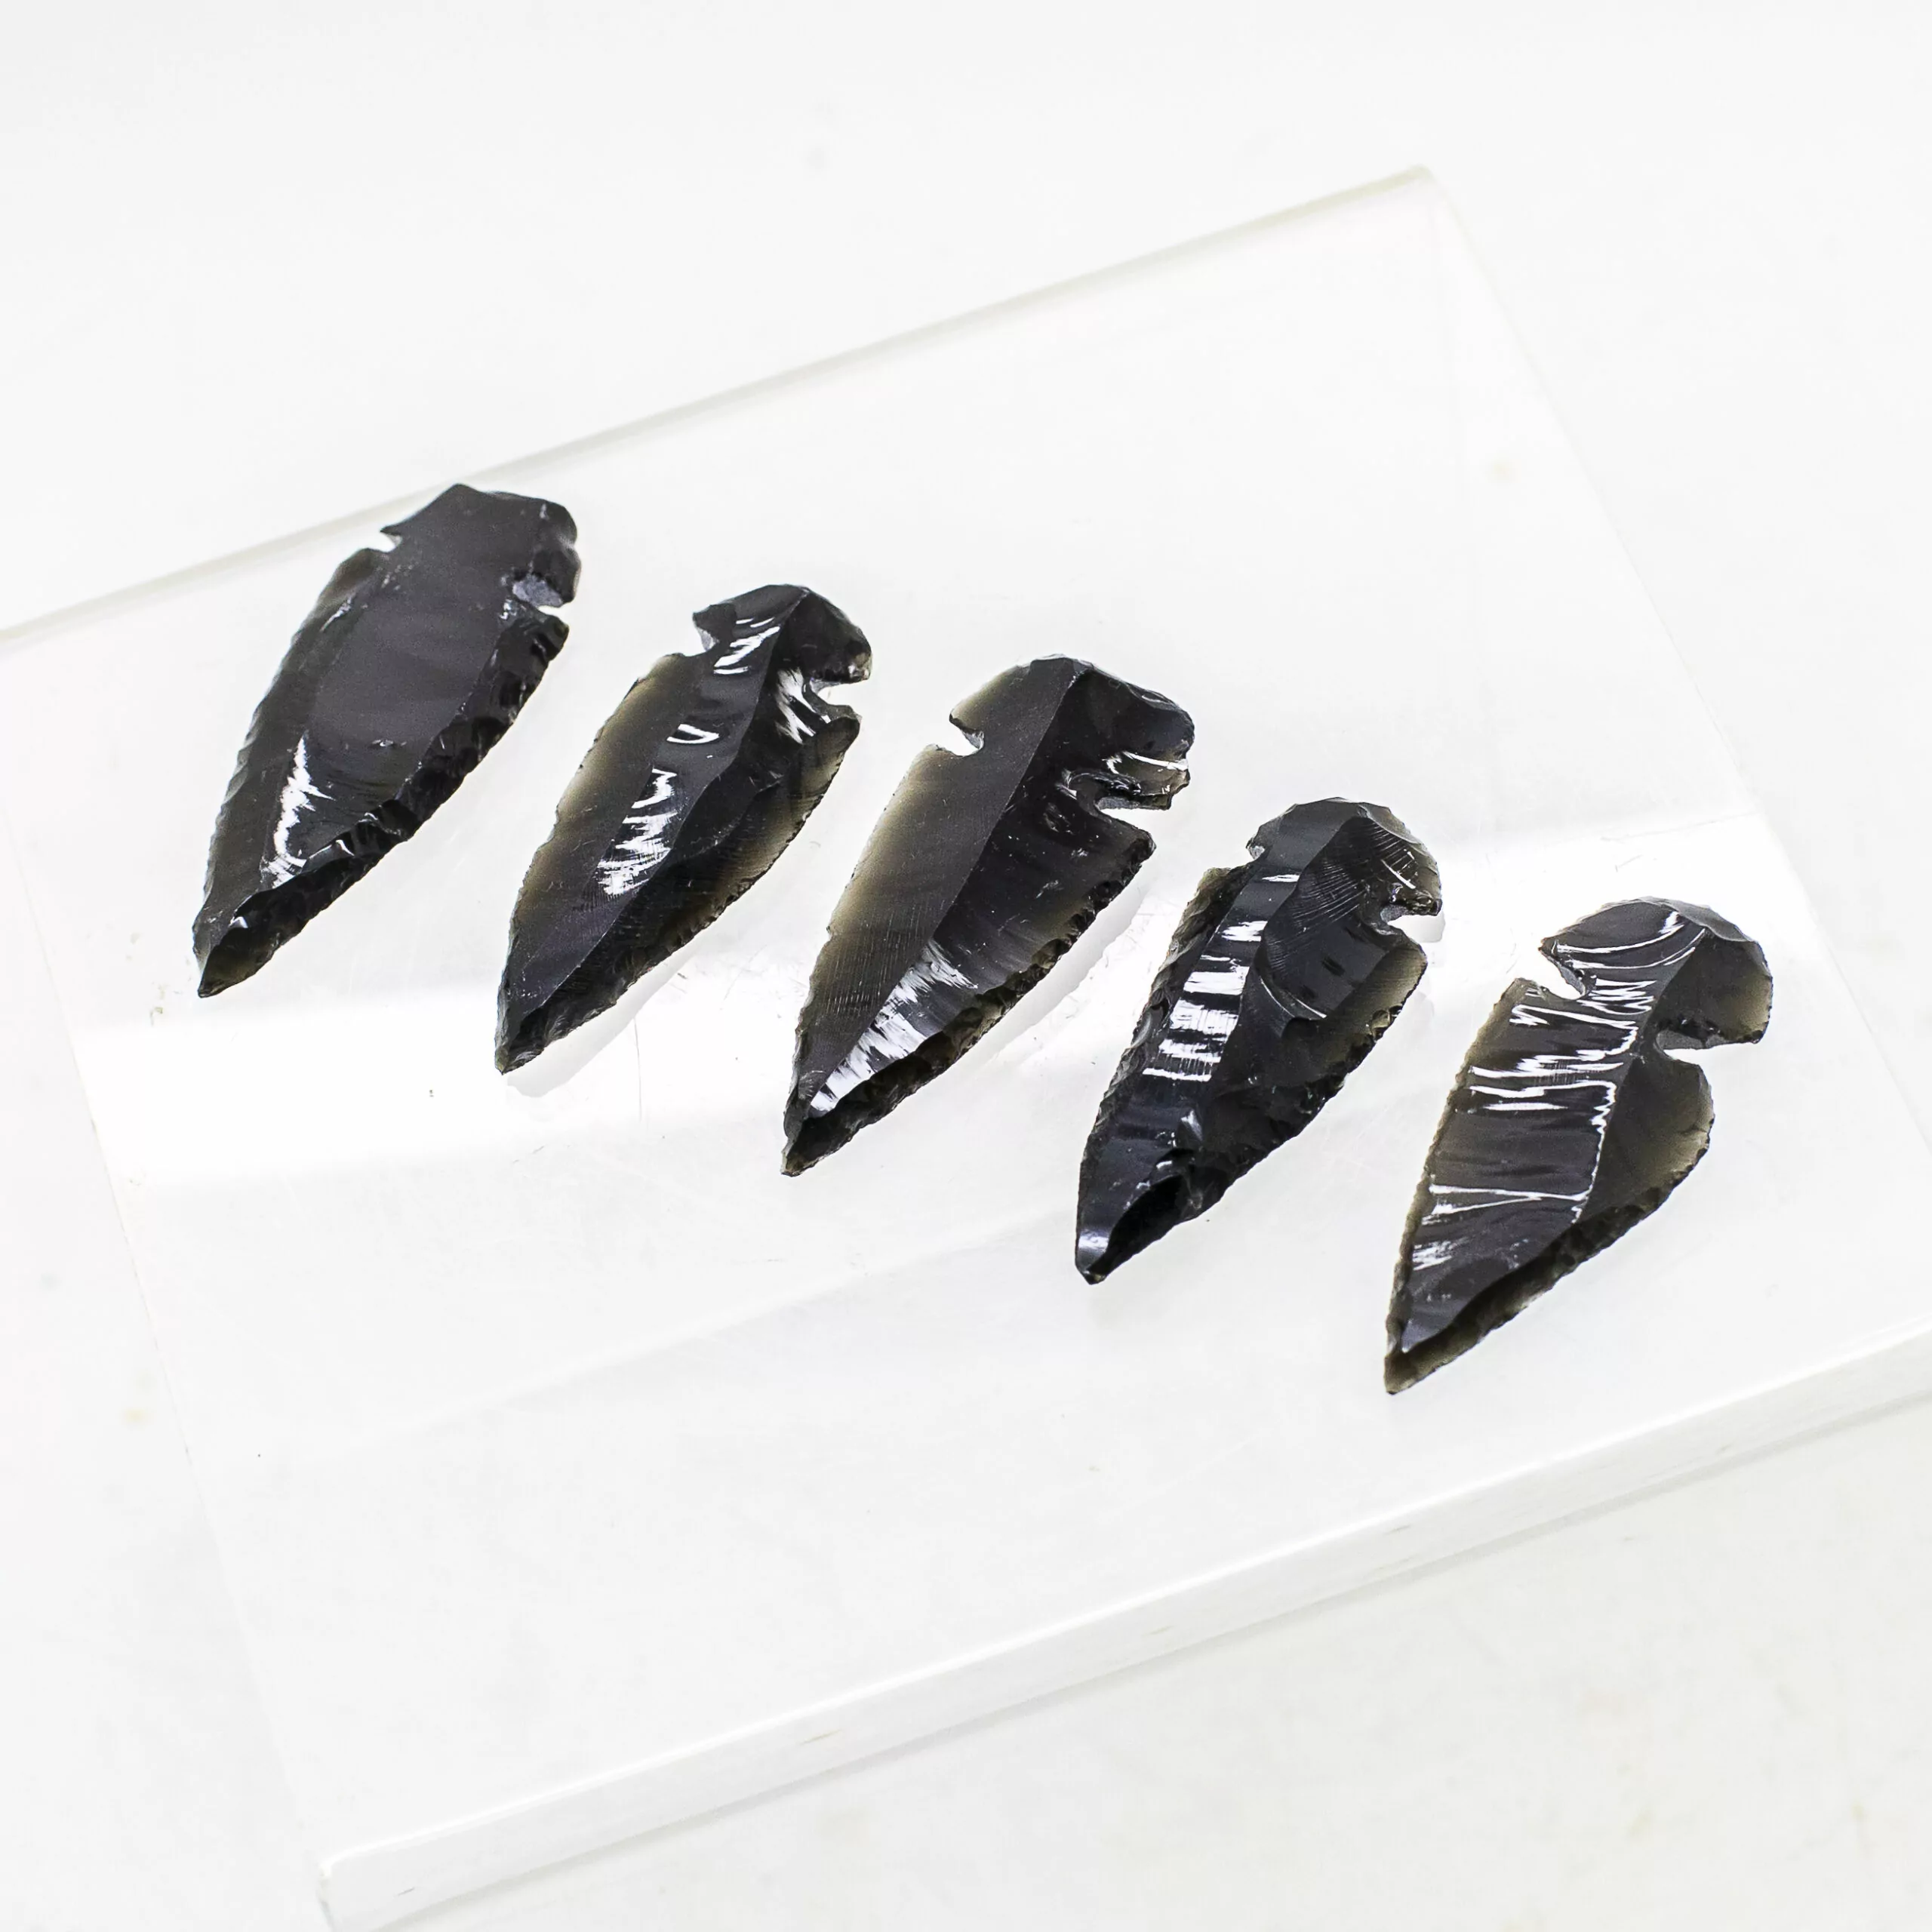 black obsidian arrowhead